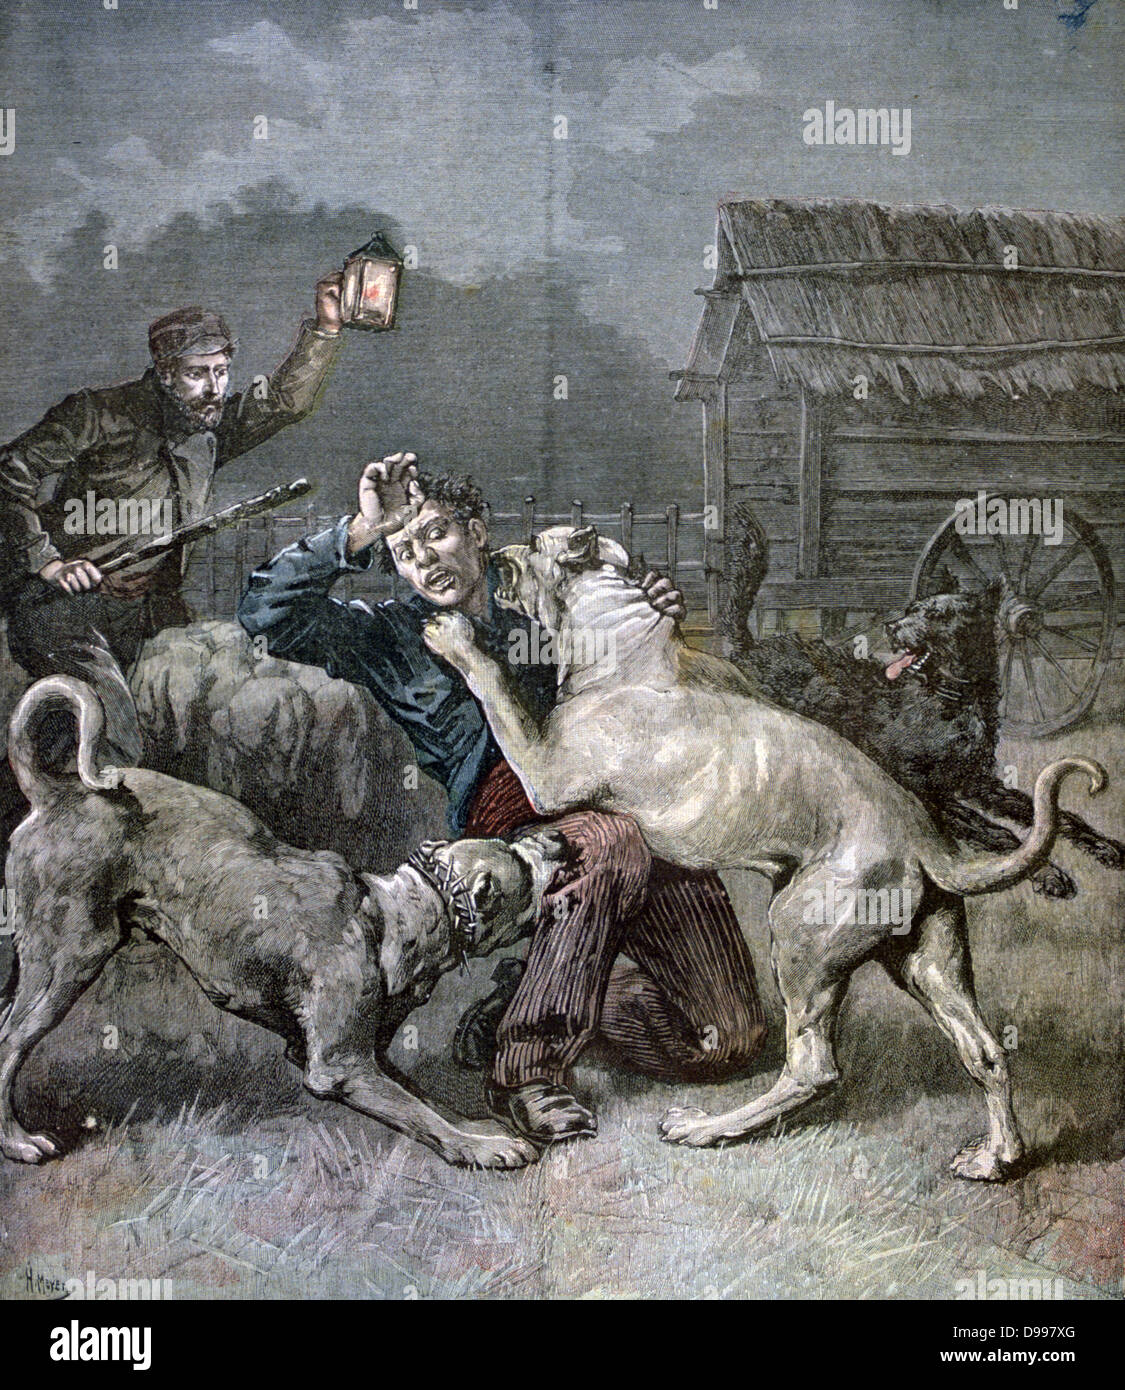 Hirten, durch Lärm in der Nacht gestört, findet einen kriminellen angegriffen und durch die drei großen Hunden bewacht Schafe getötet. Von "Le Petit Journal", 21. November 1891. Stockfoto